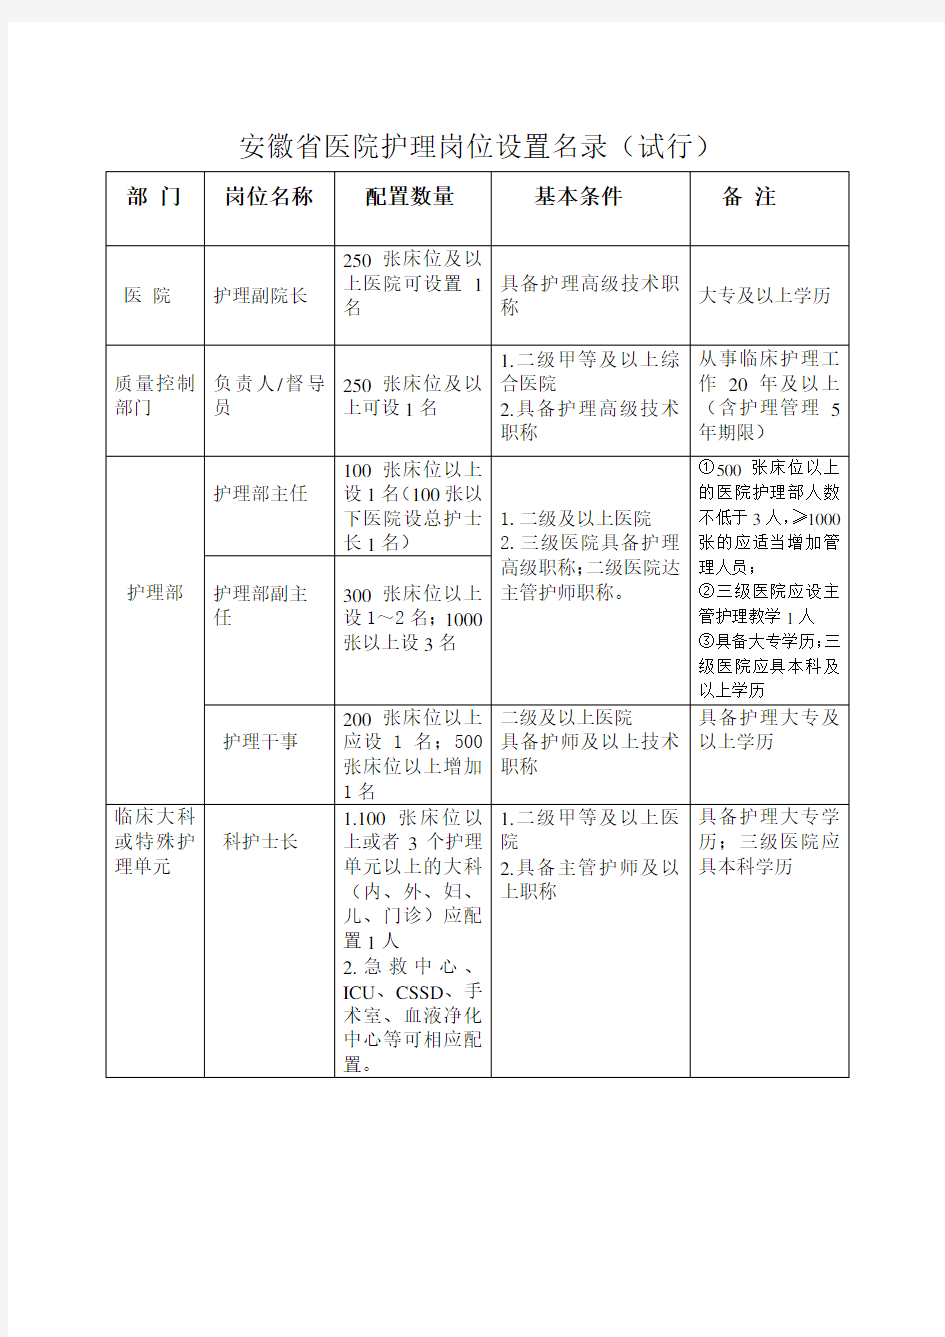 安徽省医院护理岗位设置名录(试行)